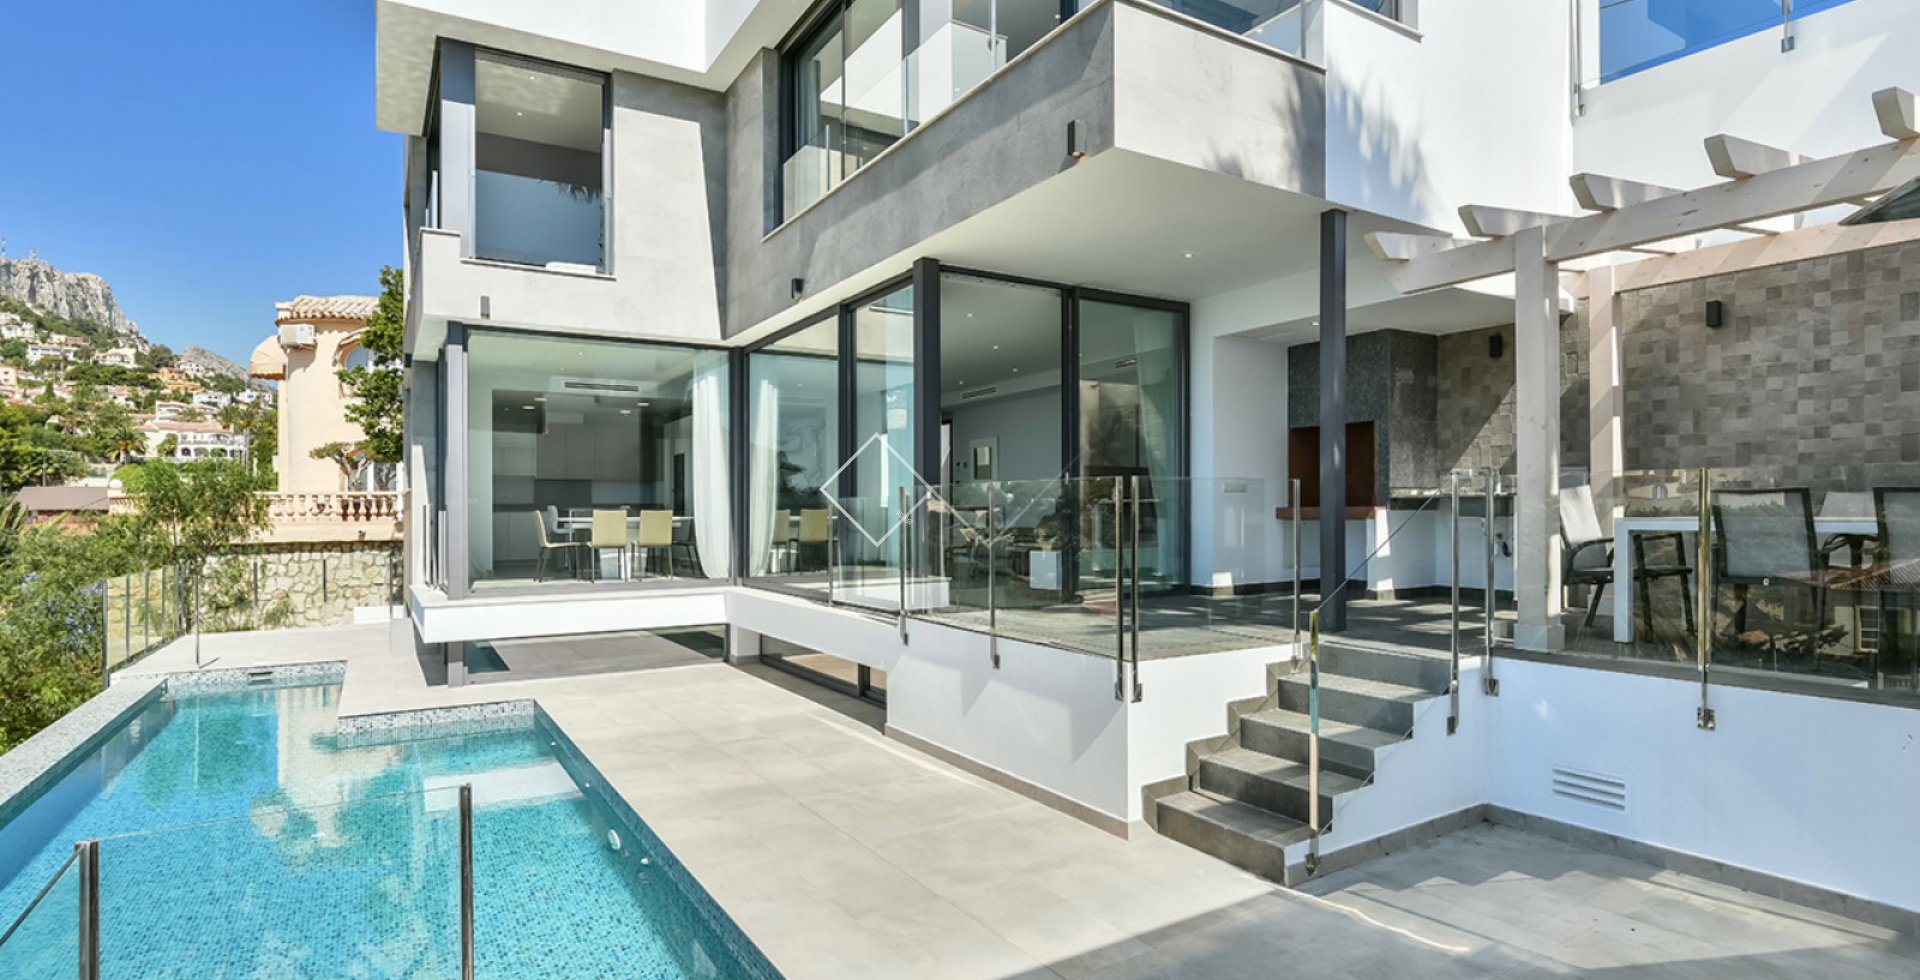 Pool und Haus - SCHÖNE AUSSICHTEN: moderne Villa in Calpe zu verkaufen